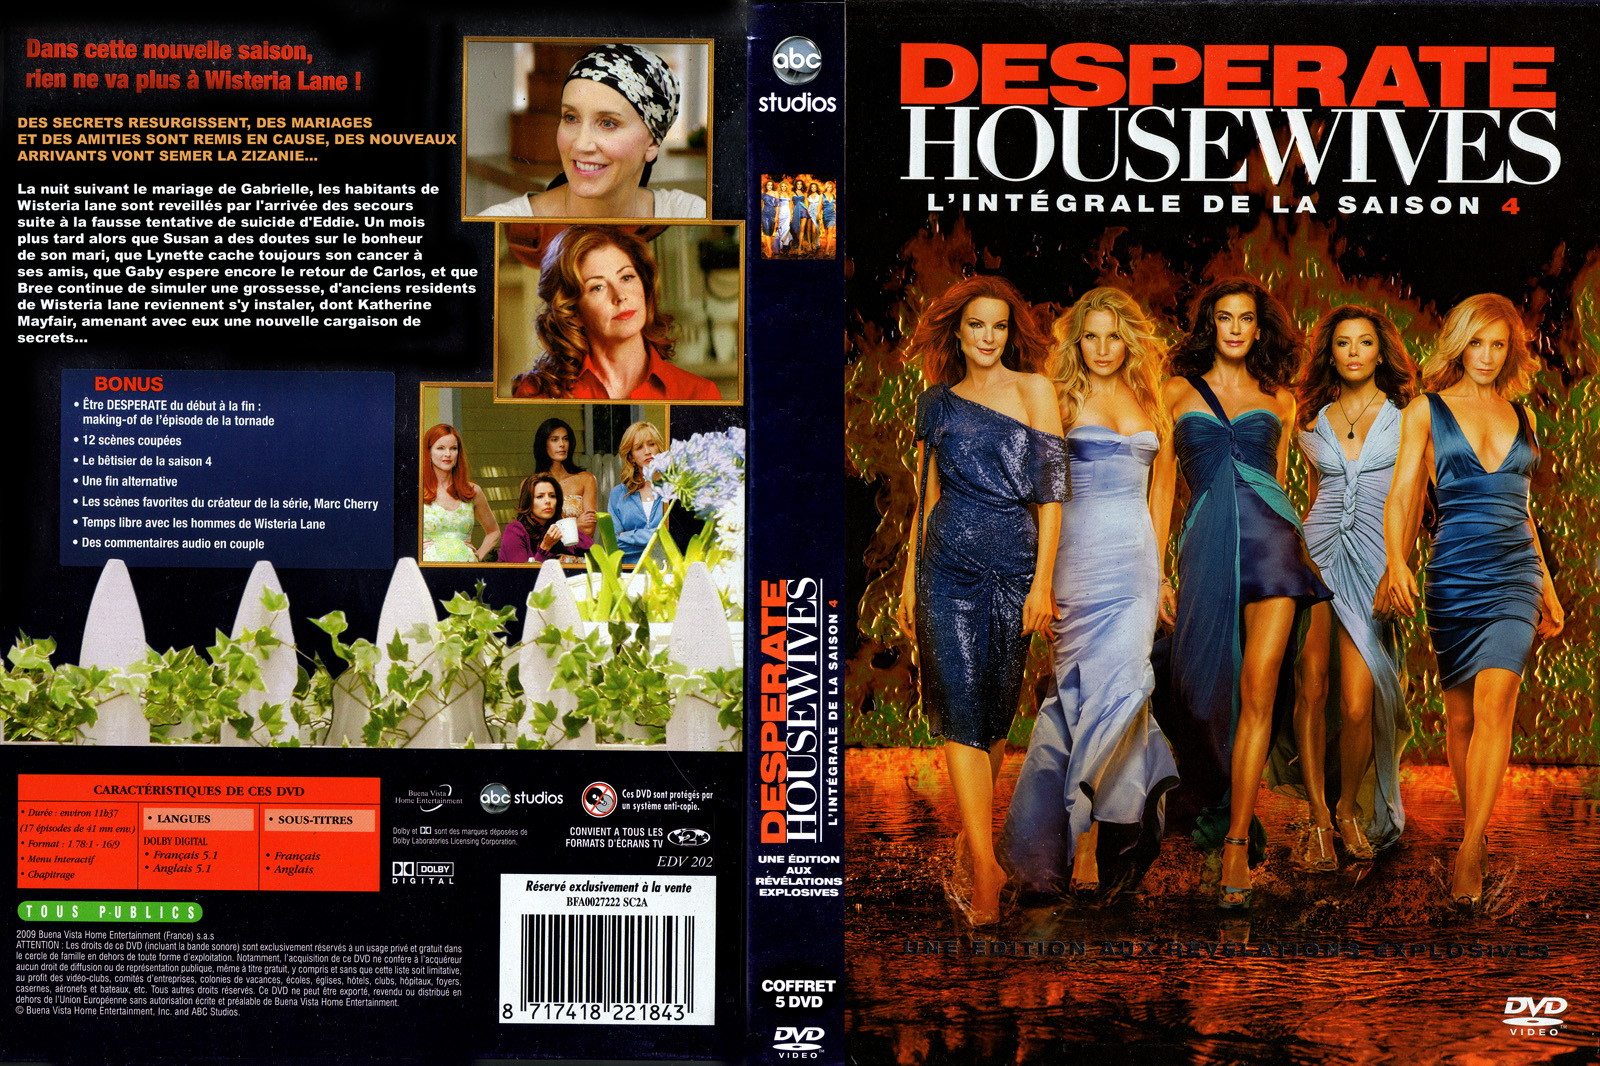 Jaquette DVD Desperate Housewives Saison 4 COFFRET